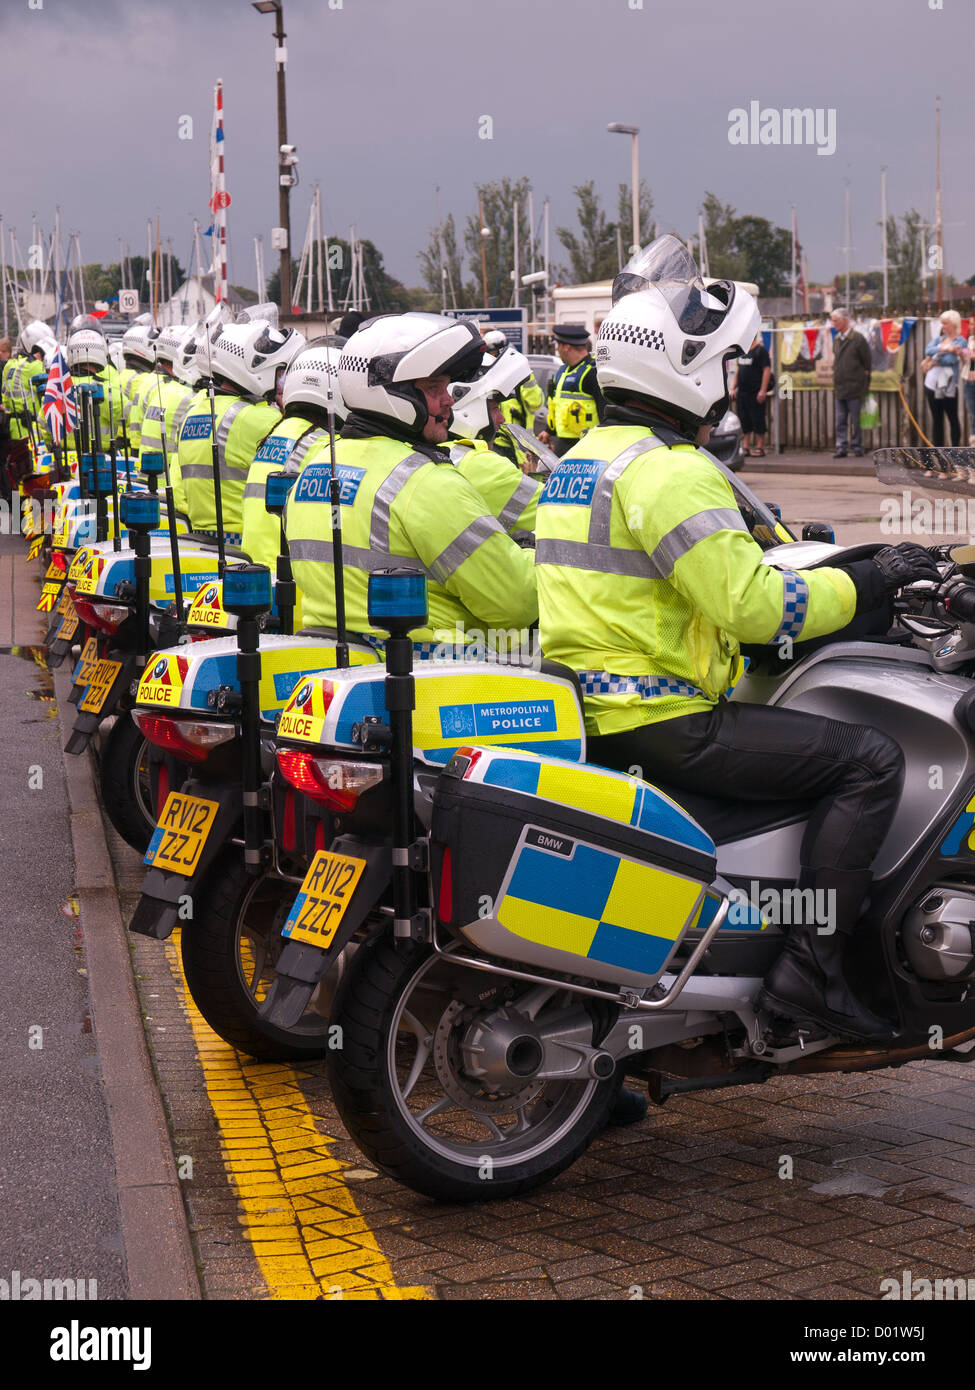 Torcia olimpica Lymington Hampshire England Regno Unito - polizia moto piloti in attesa di correre sul Wightlink traghetto per auto Foto Stock